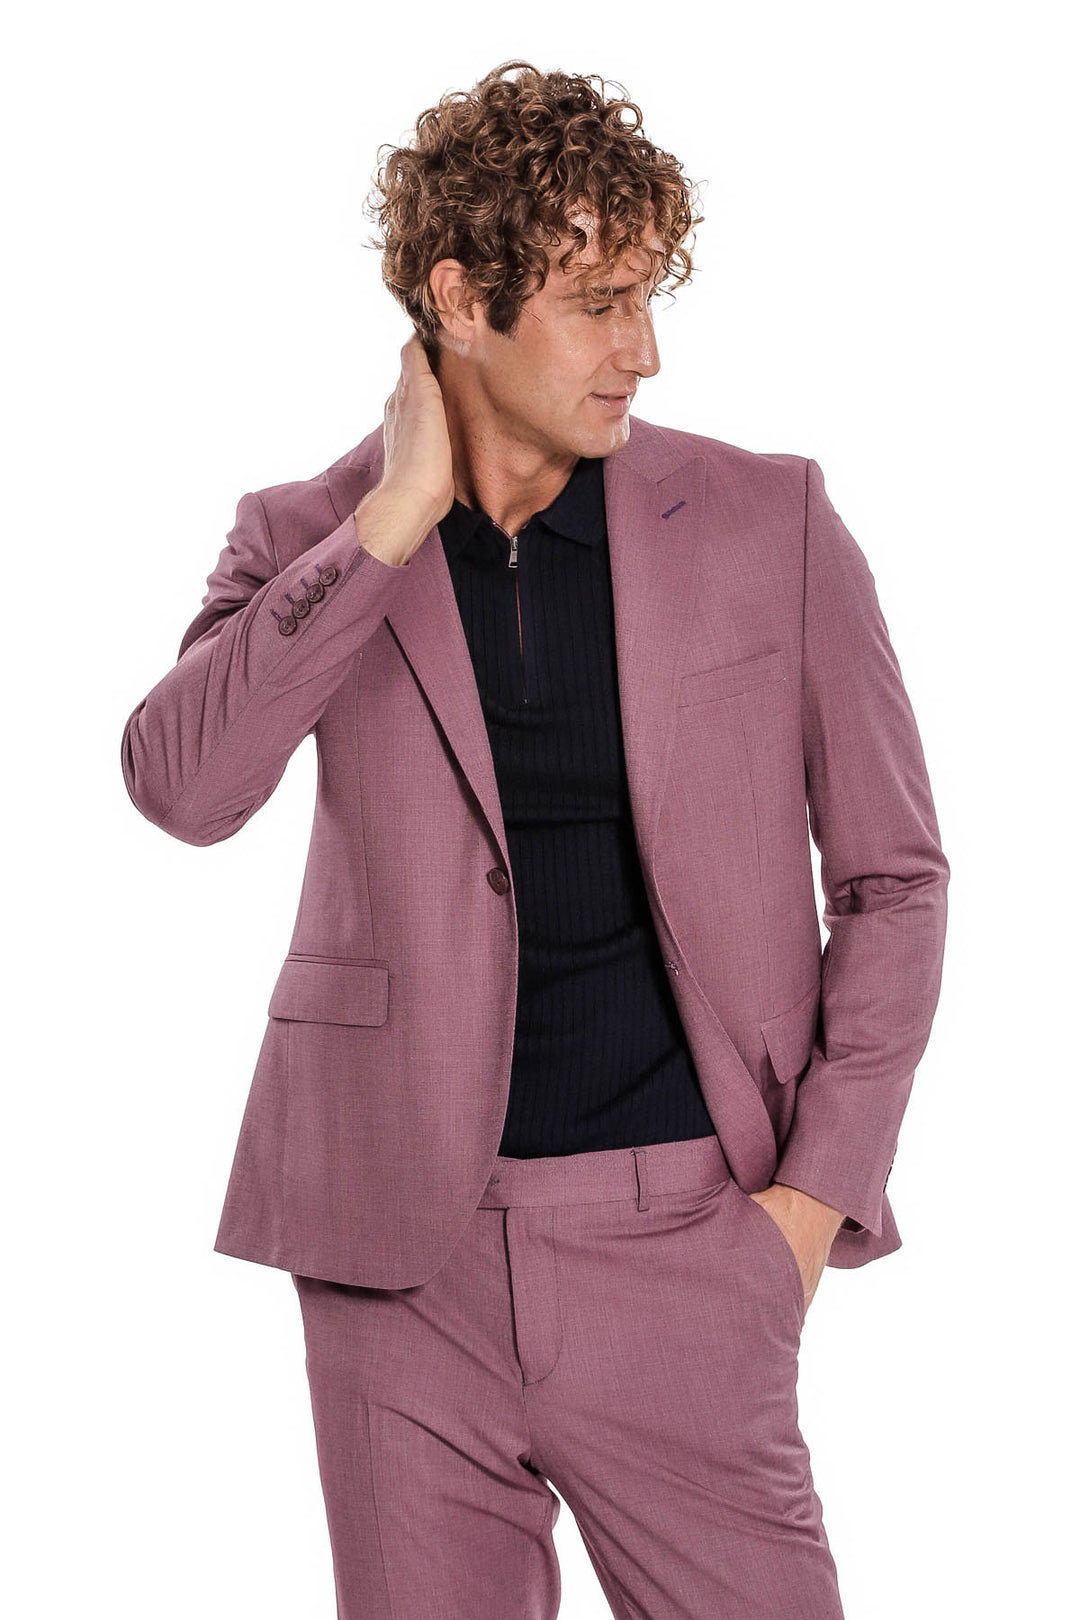 2 Piece Patterned Slim Fit Purple Men Suit - Wessi